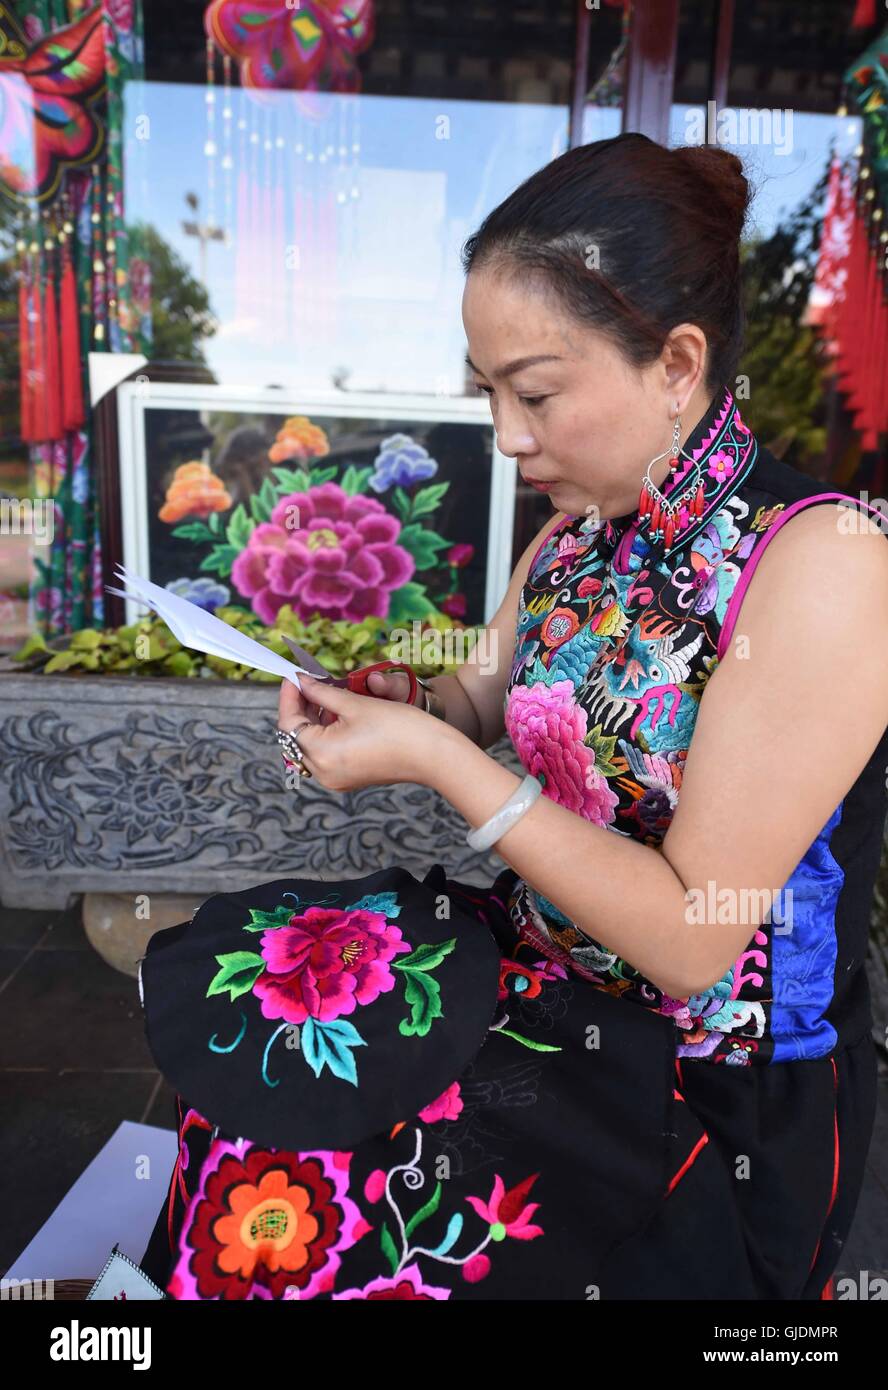 Dayao, la Provincia china de Yunnan. 14 Aug, 2016. Luo Jun hace una muestra del producto bordado en el taller de Chuxiong Yi Prefectura Autónoma, en el suroeste de la Provincia china de Yunnan, el 14 de agosto, 2016. Luo Jun, emprendedor femenino de la etnia Yi, establecer una cooperativa en 2011 para producir bordados con singular estilo étnico Yi, como vestidos, bolsos, anillos y oído, etc. En los primeros ocho meses de este año, las ventas de su cooperativa alcanzó 17 millones de yuan (unos 2,56 millones de dólares EE.UU.). © Yang Zongyou/Xinhua/Alamy Live News Foto de stock